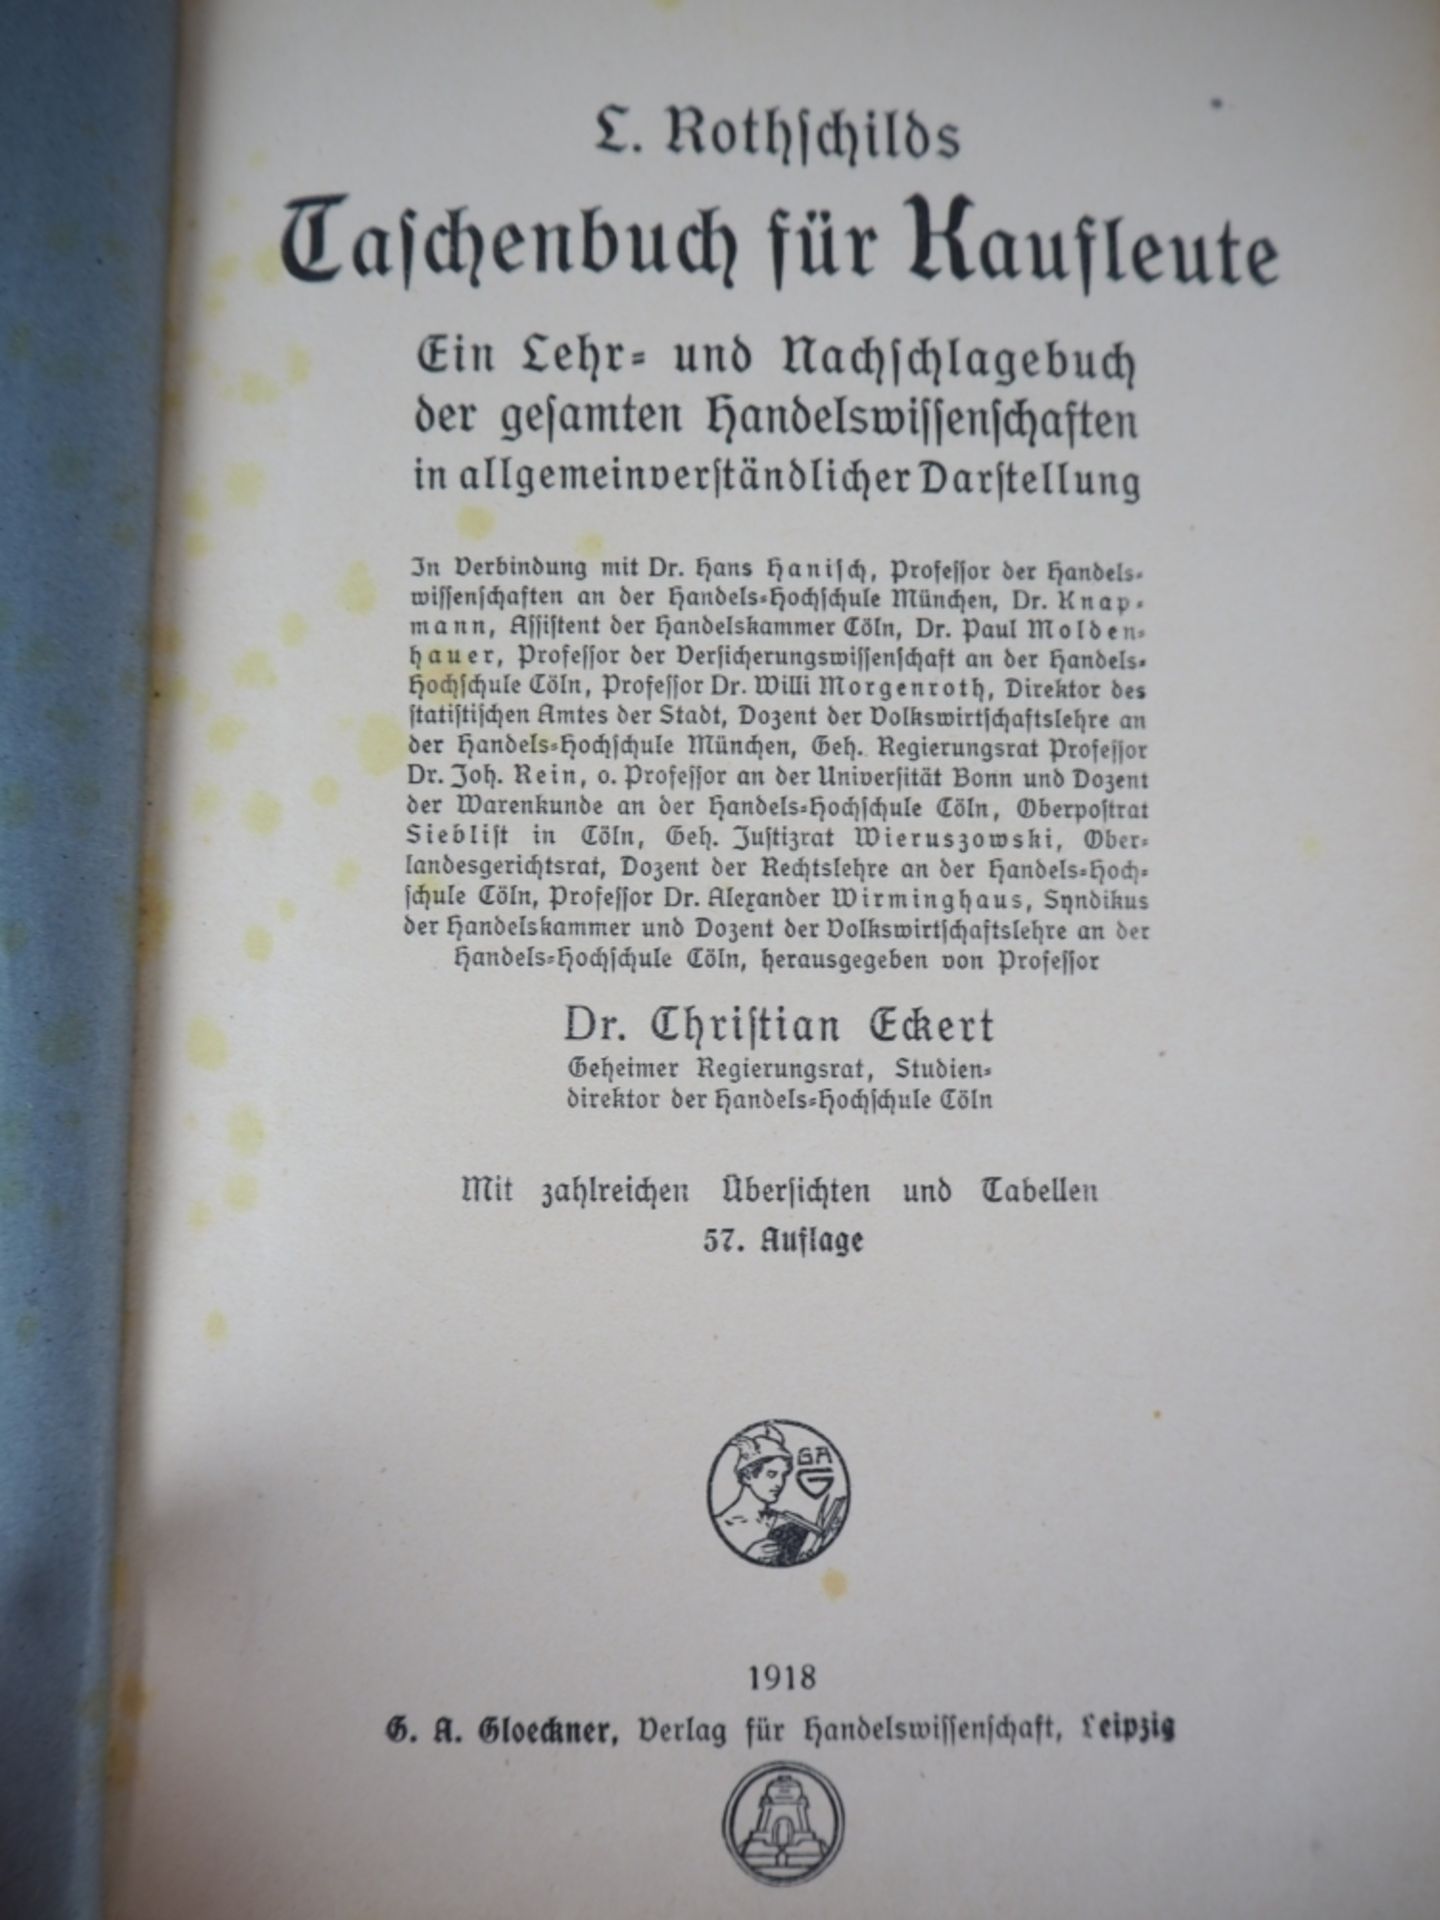 Rothschilds Taschenbuch für KaufleuteVerlag G.A. Gloeckner, Leipzig, 1918. Von Dr. Chris - Bild 3 aus 3